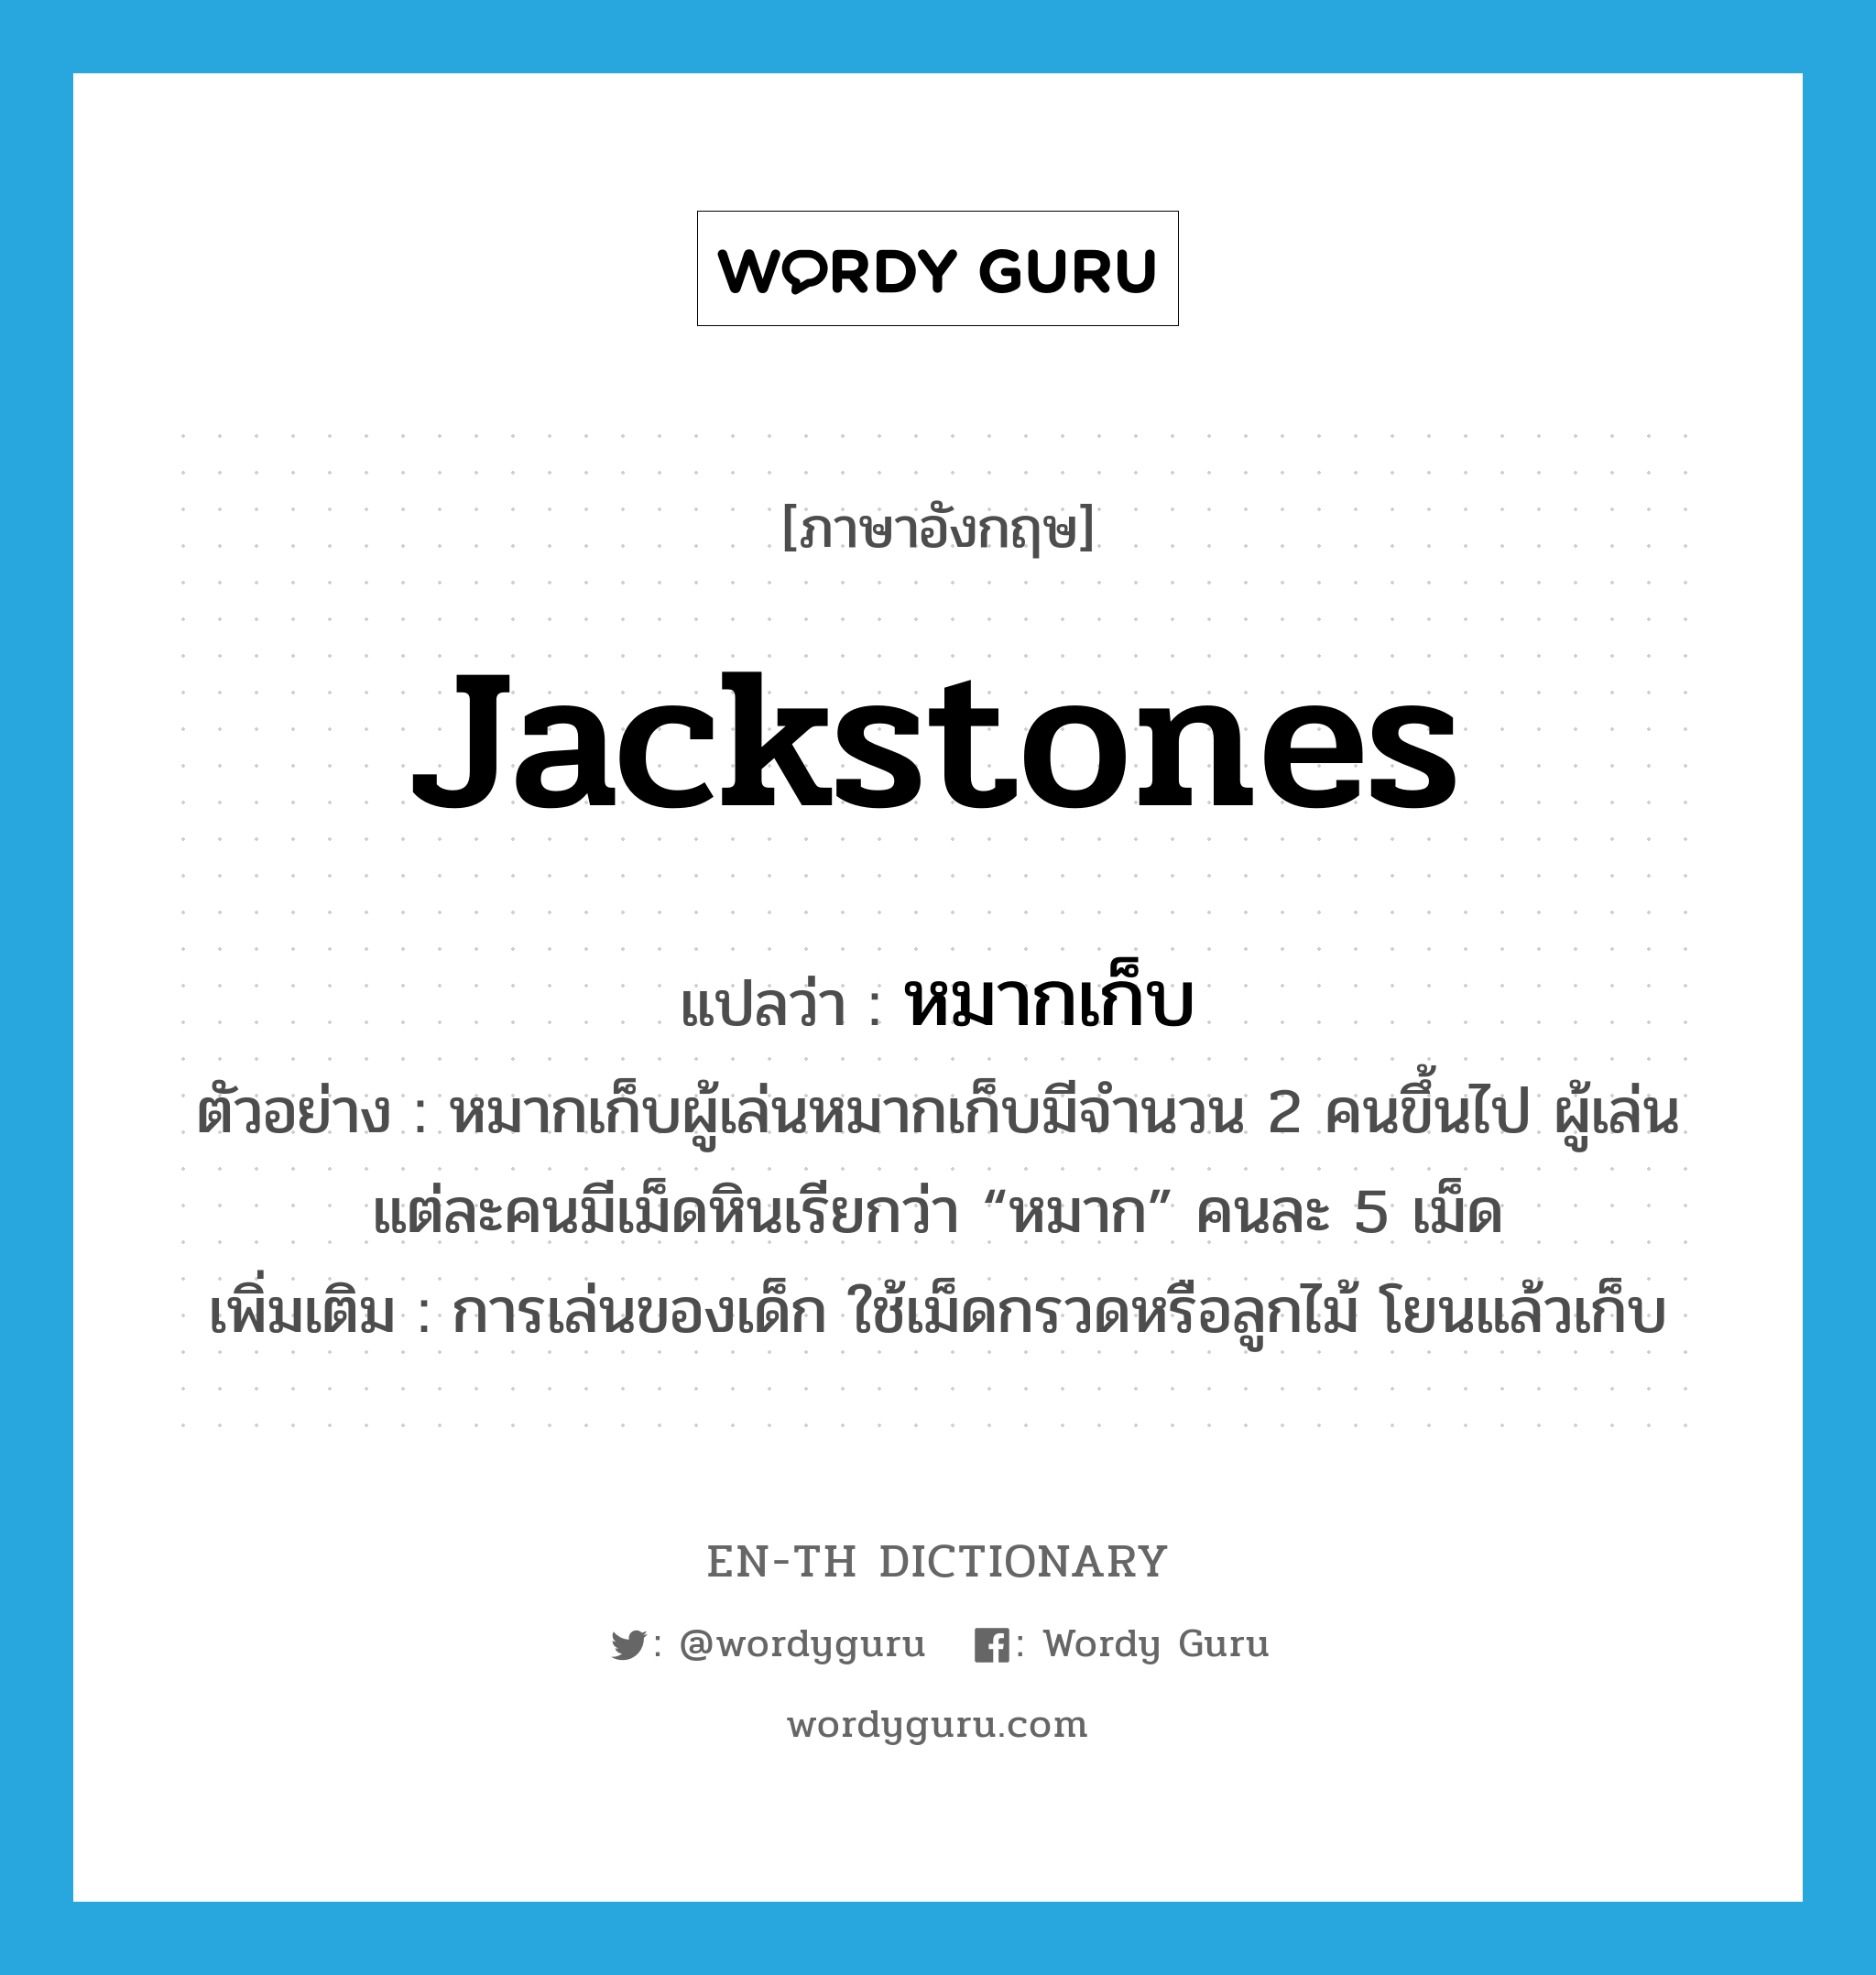 jackstones แปลว่า?, คำศัพท์ภาษาอังกฤษ jackstones แปลว่า หมากเก็บ ประเภท N ตัวอย่าง หมากเก็บผู้เล่นหมากเก็บมีจำนวน 2 คนขึ้นไป ผู้เล่นแต่ละคนมีเม็ดหินเรียกว่า “หมาก” คนละ 5 เม็ด เพิ่มเติม การเล่นของเด็ก ใช้เม็ดกรวดหรือลูกไม้ โยนแล้วเก็บ หมวด N